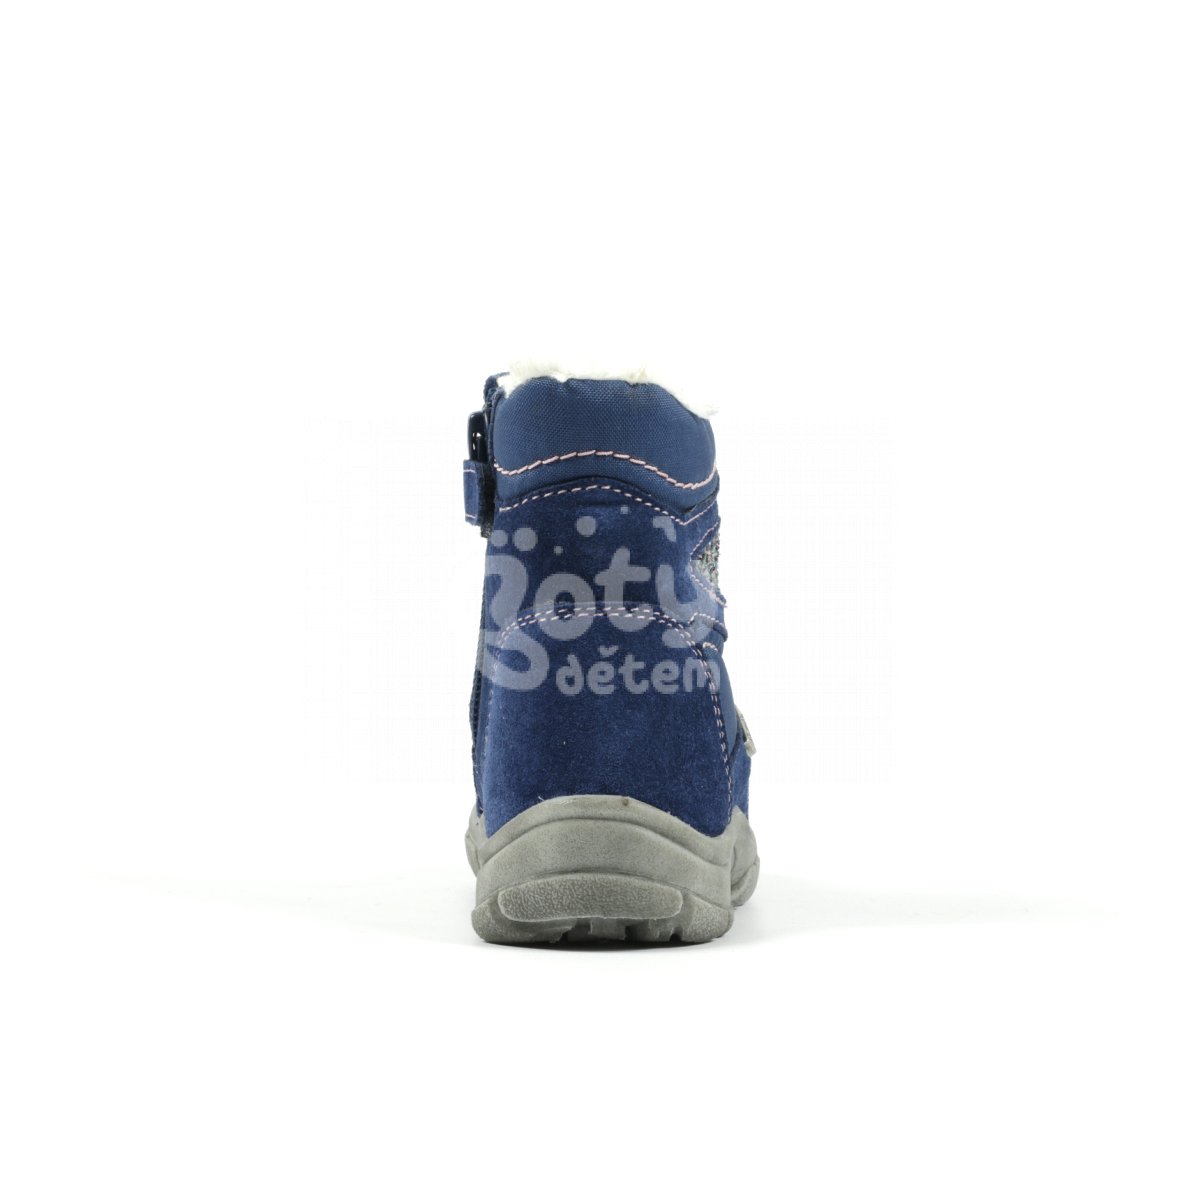 Zimní kožená obuv Richter 2754-4111-6821 modrá